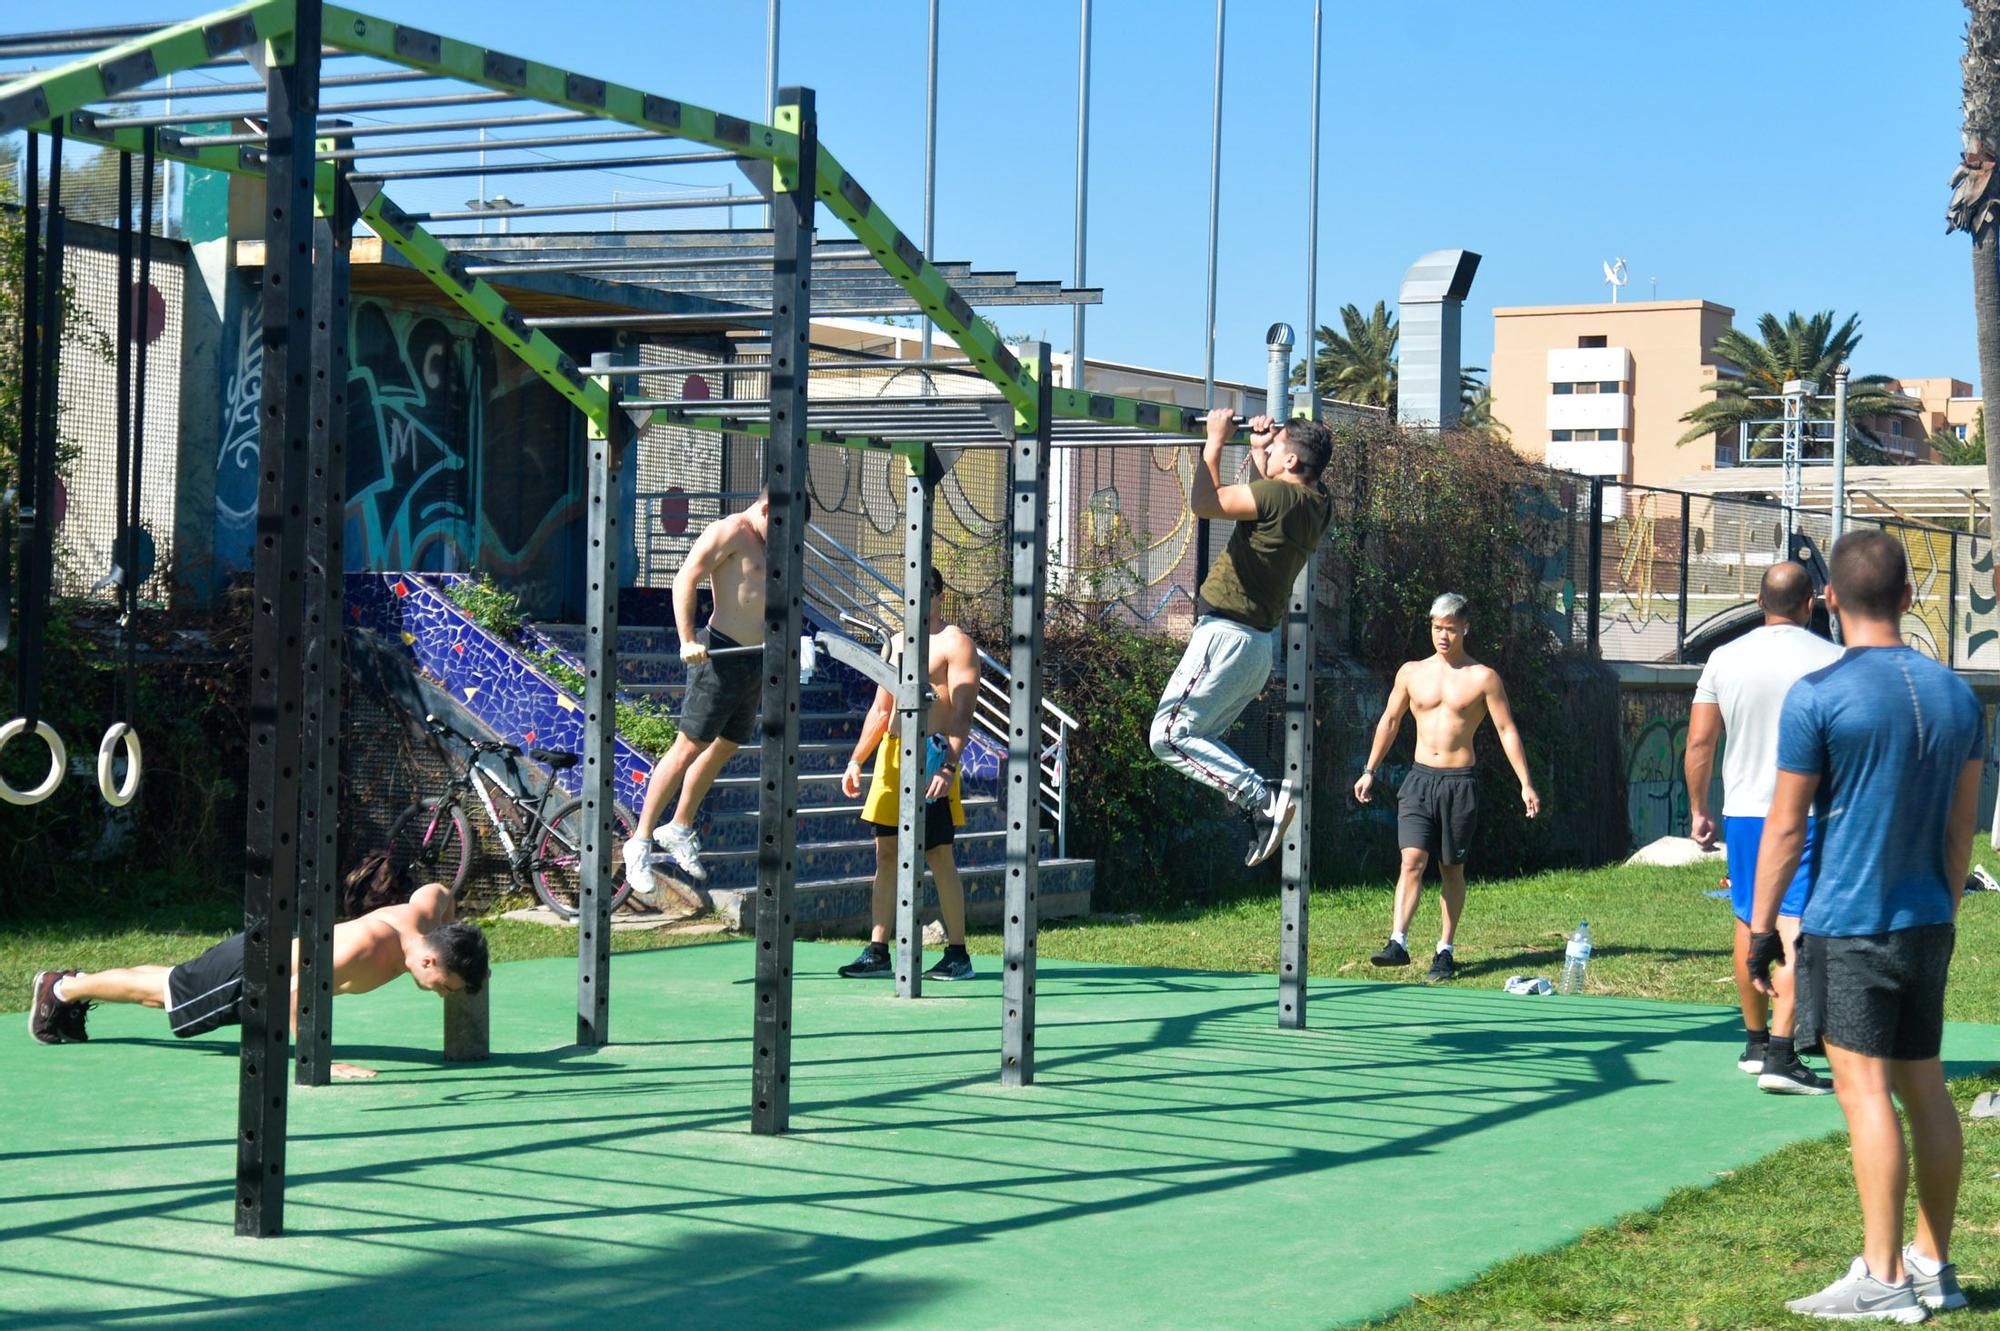 Gente haciendo deporte en Parque Romano tras el cierre de gimnasios e instalaciones deportivas